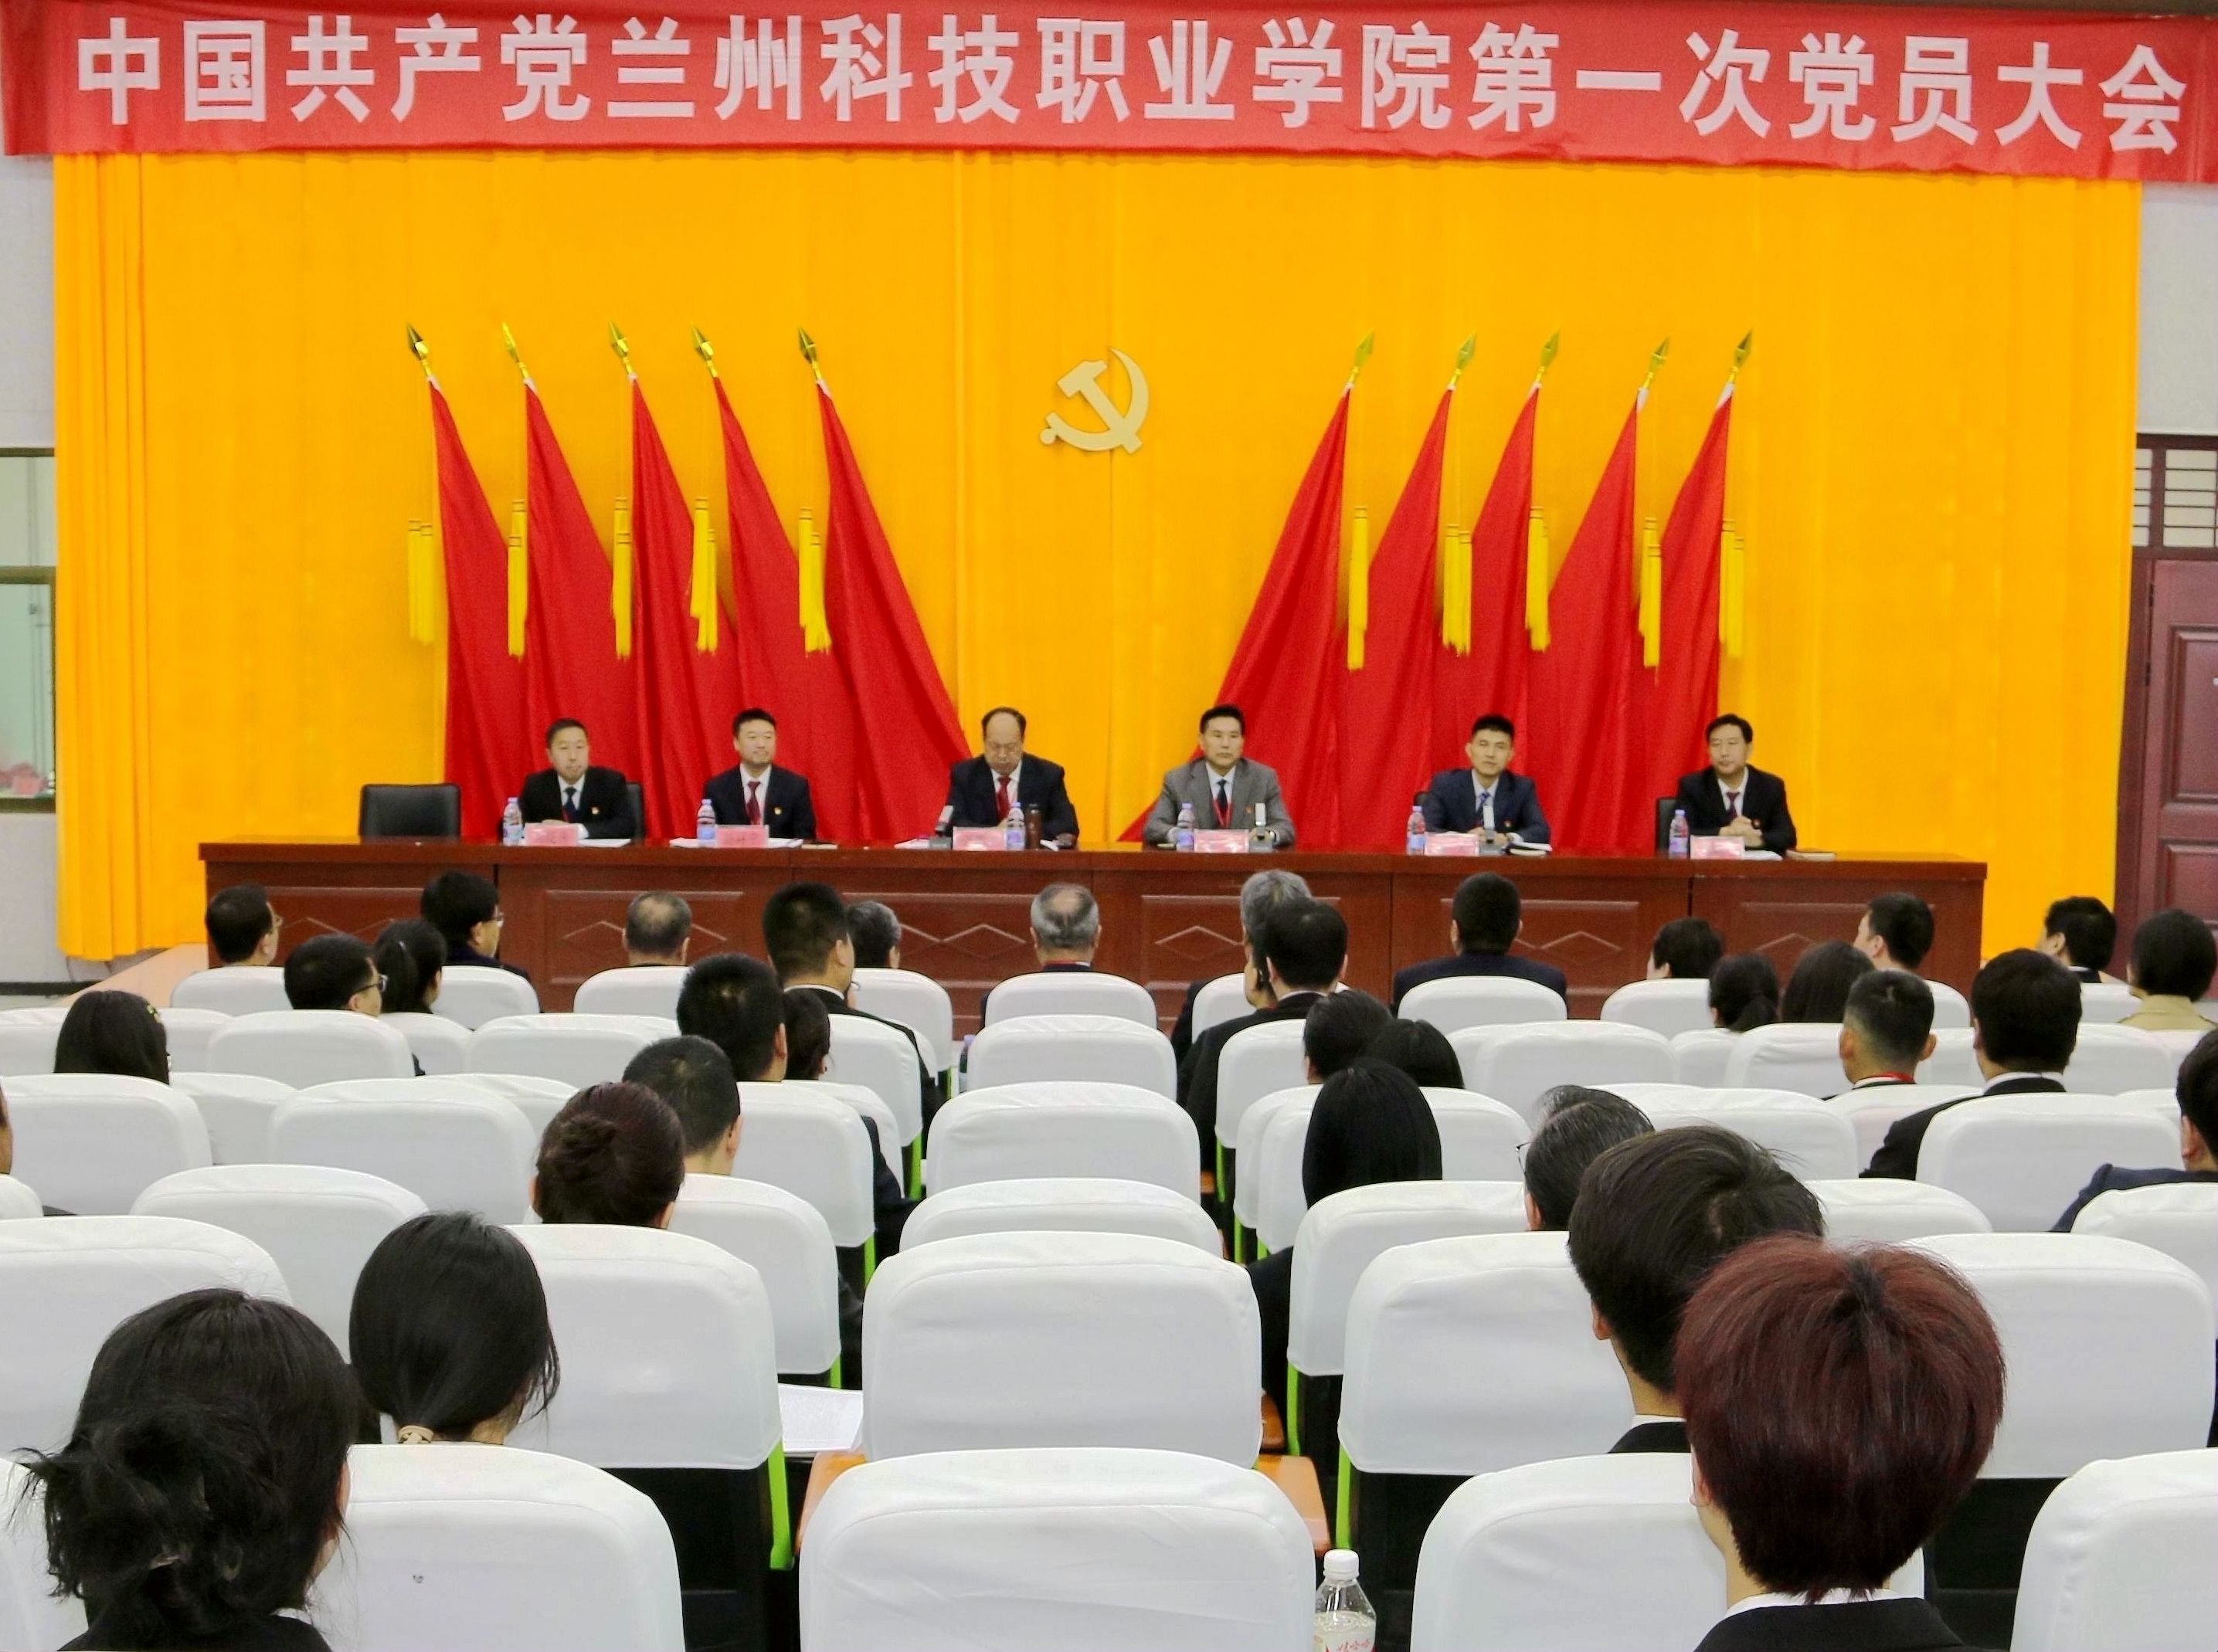 中国共产党兰州科技职业学院第一次党员大会隆重开幕